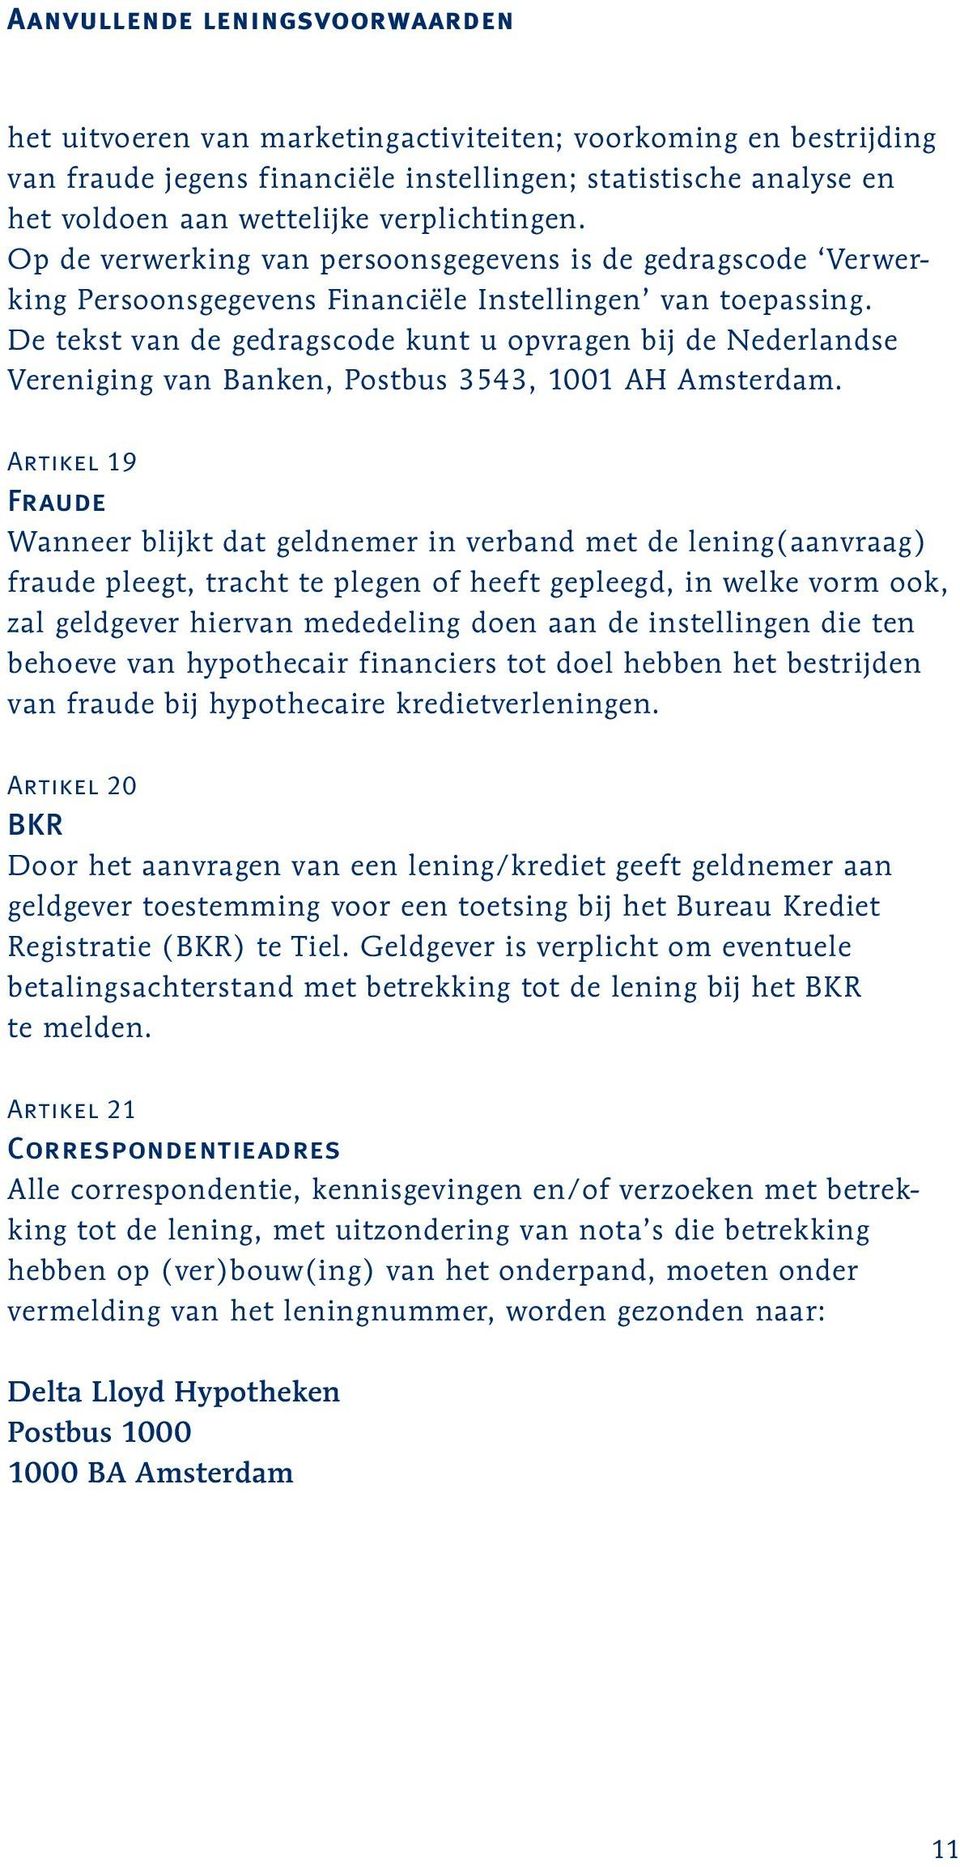 De tekst van de gedragscode kunt u opvragen bij de Nederlandse Vereniging van Banken, Postbus 3543, 1001 AH Amsterdam.